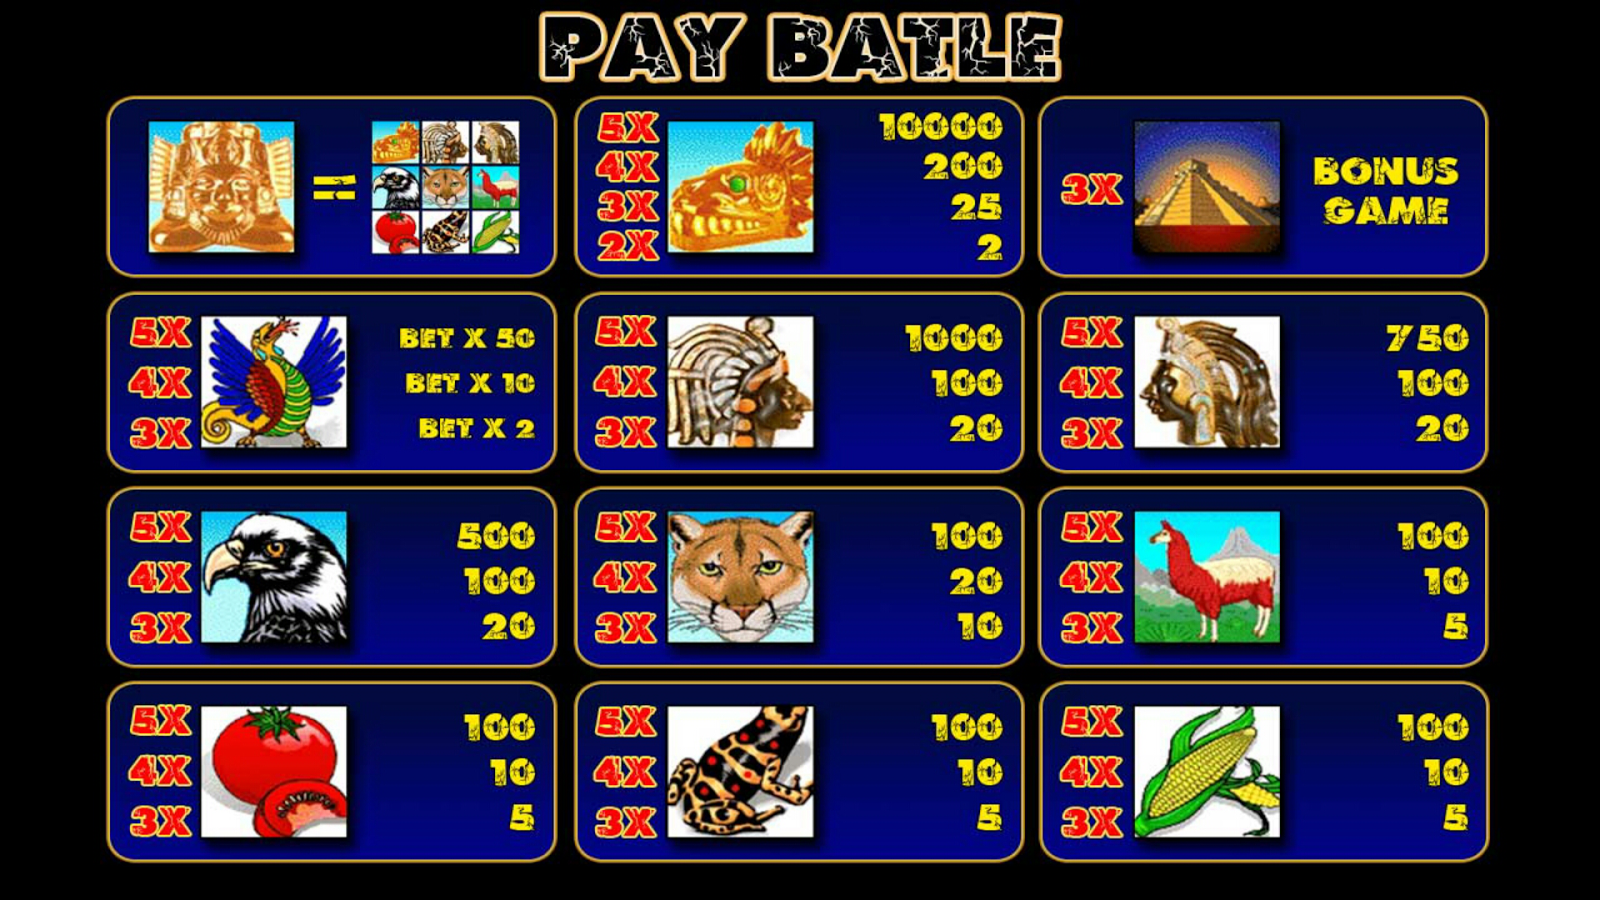 Игровые автоматы пирамида играть онлайн бесплатно без регистрации игровые автоматы копилка свинья играть